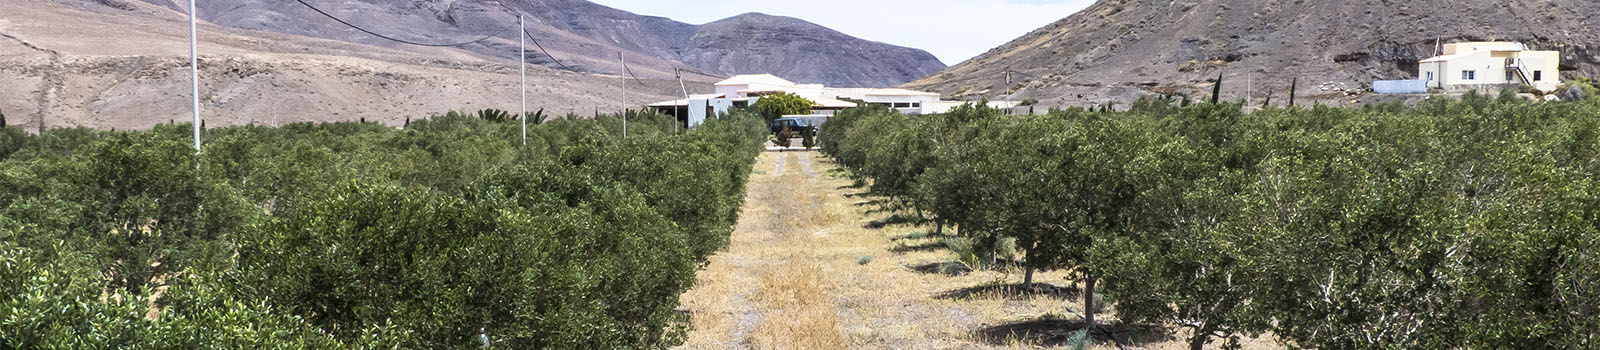 Die Oliven Plantage Aurora Verde in Pozo Negro Fuerteventura.